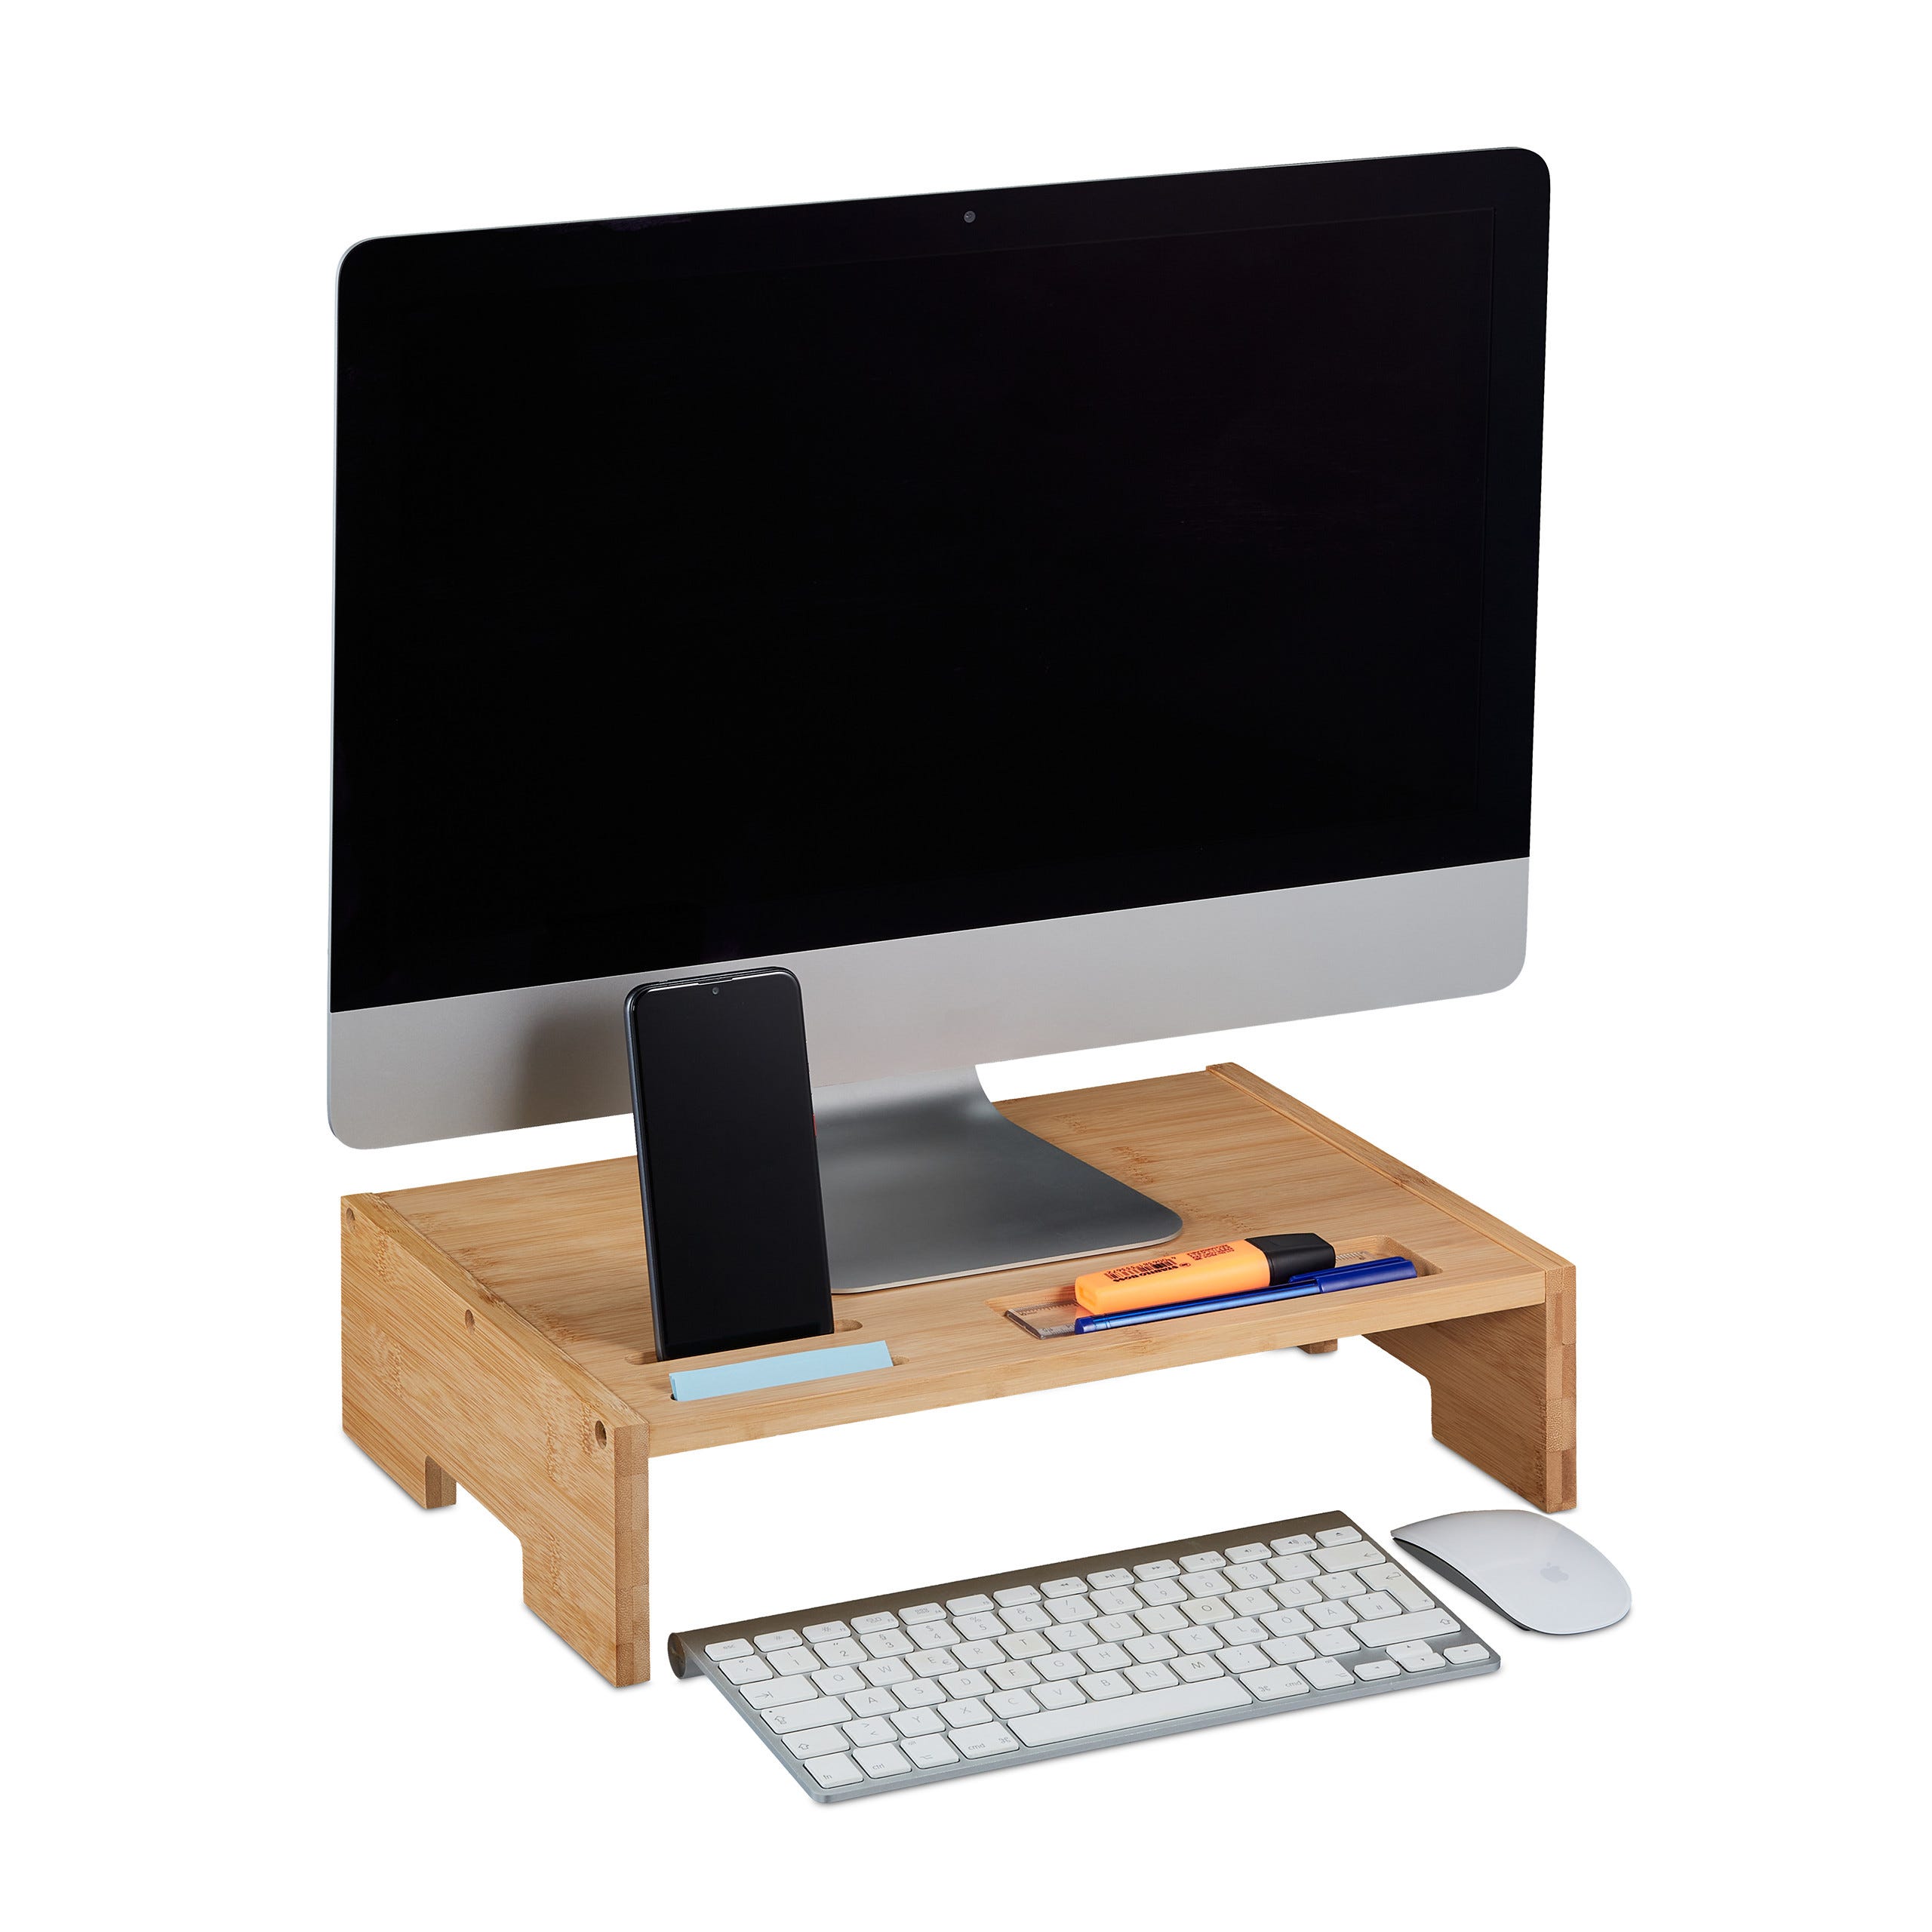 Supporto monitor rialzo scrivania per pc alzata computer portatile